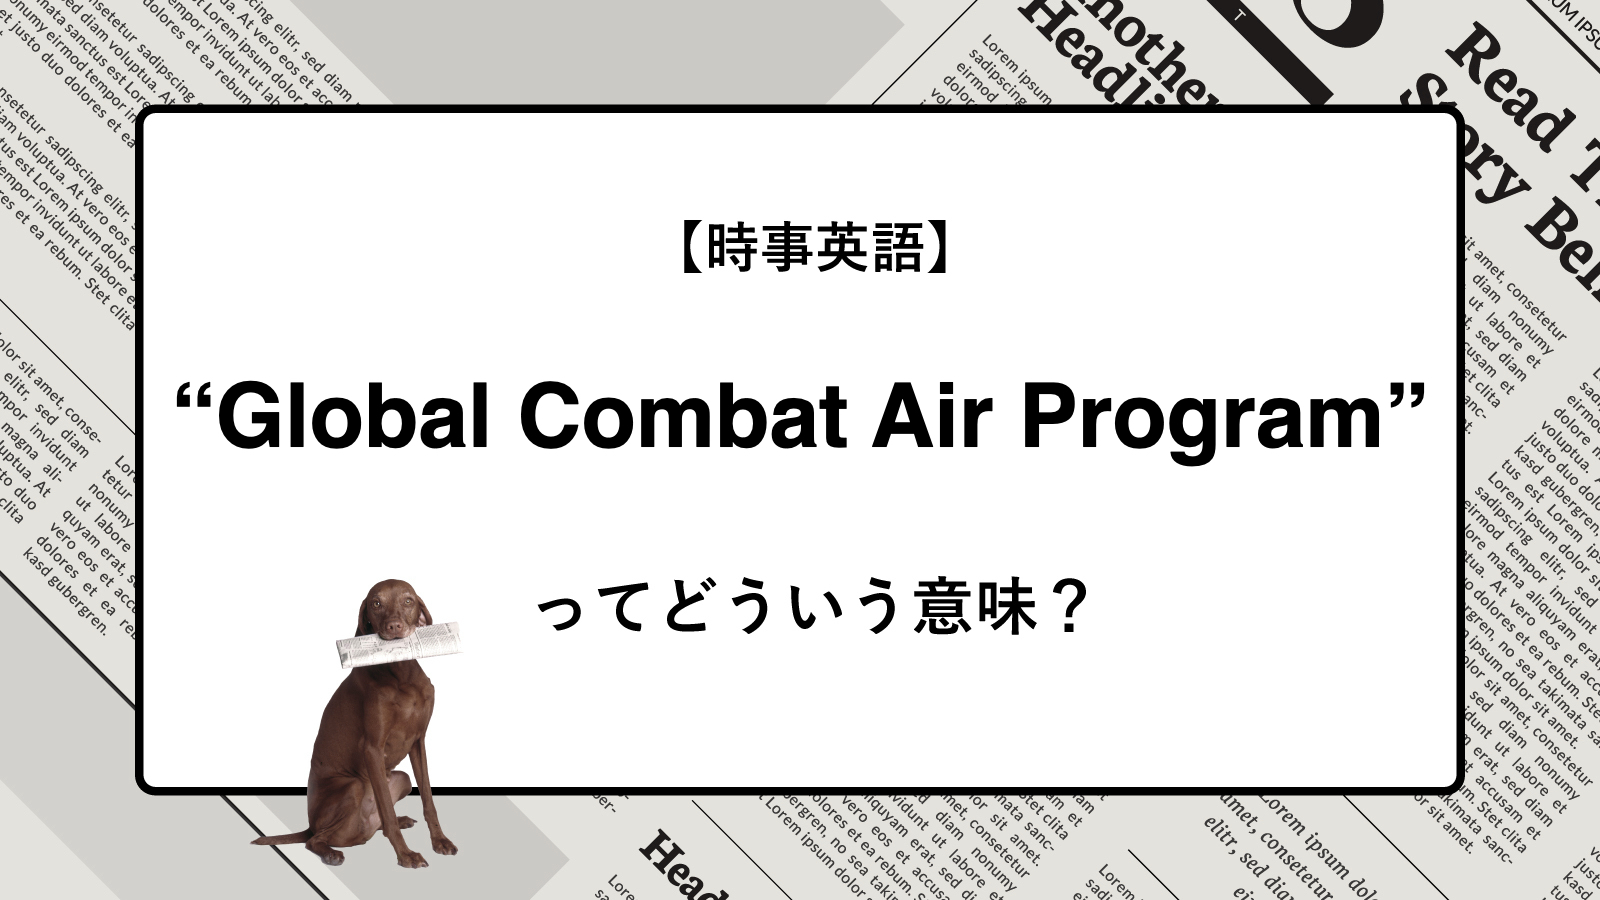 【時事英語】“Global Combat Air Program” ってどういう意味？ | ニュースの「キーワード」で語彙力を身につける